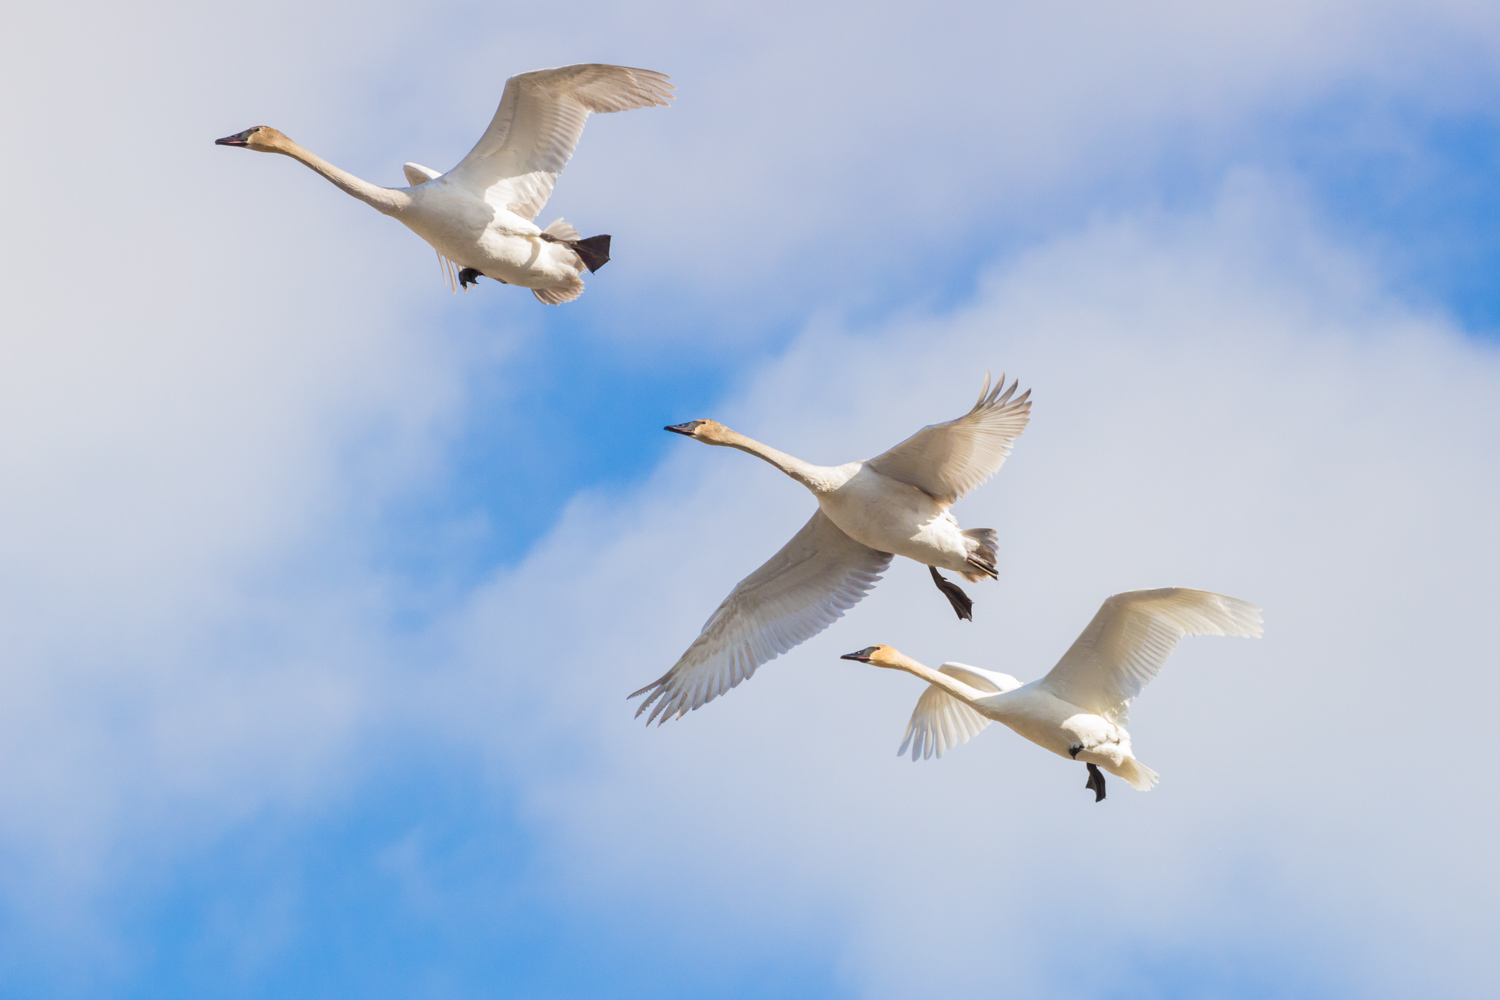  Three Swans Fly 